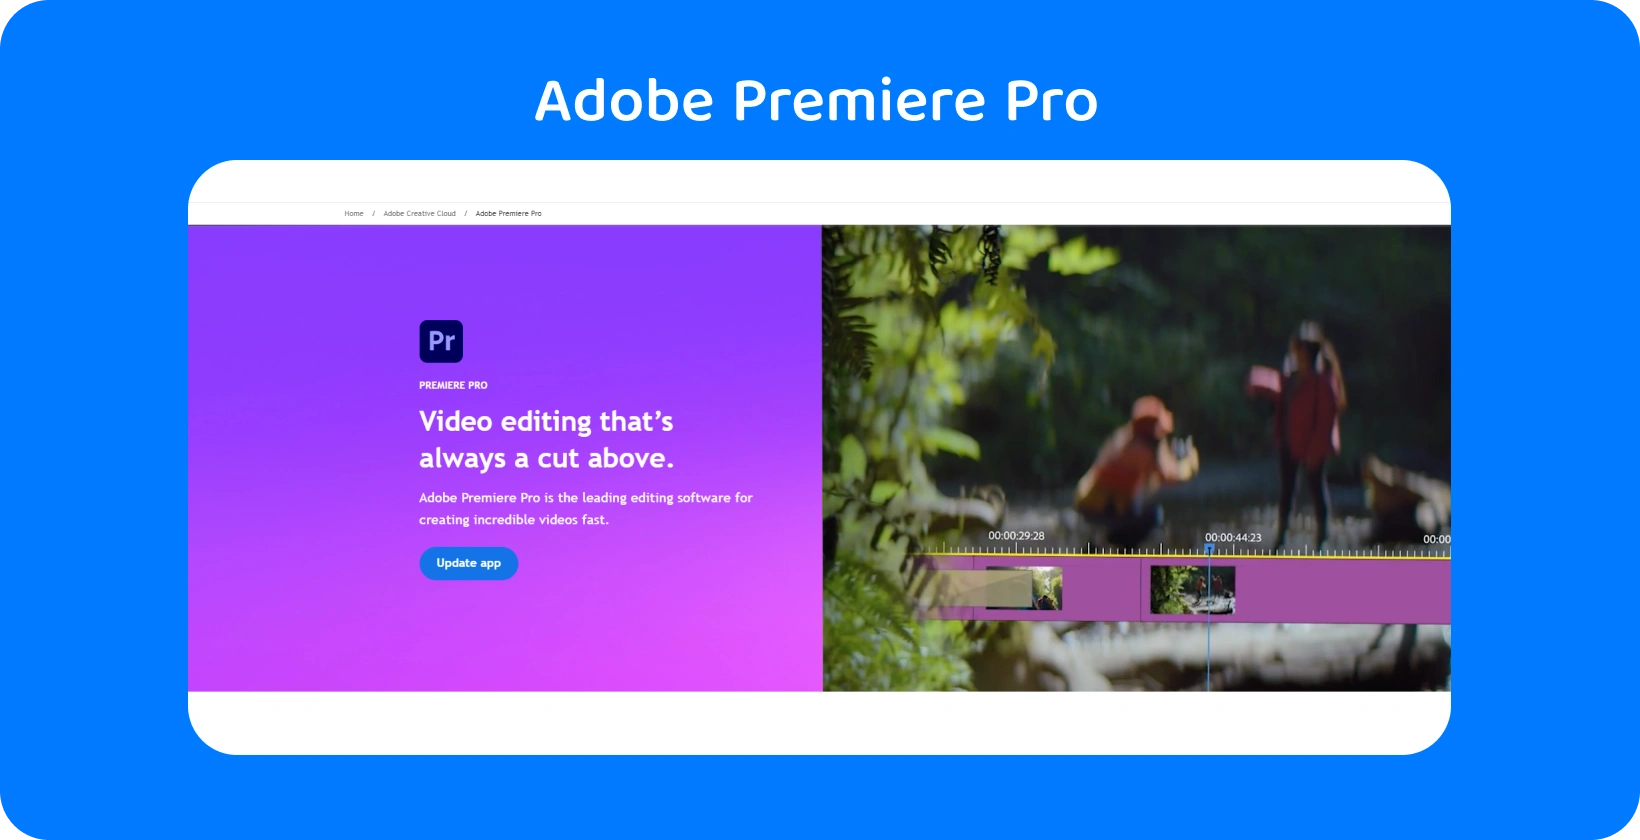 تعرض Adobe Premiere Pro الواجهة إمكانات تحرير الفيديو المتقدمة ، وهي مثالية للتعديلات السريعة والدقيقة.